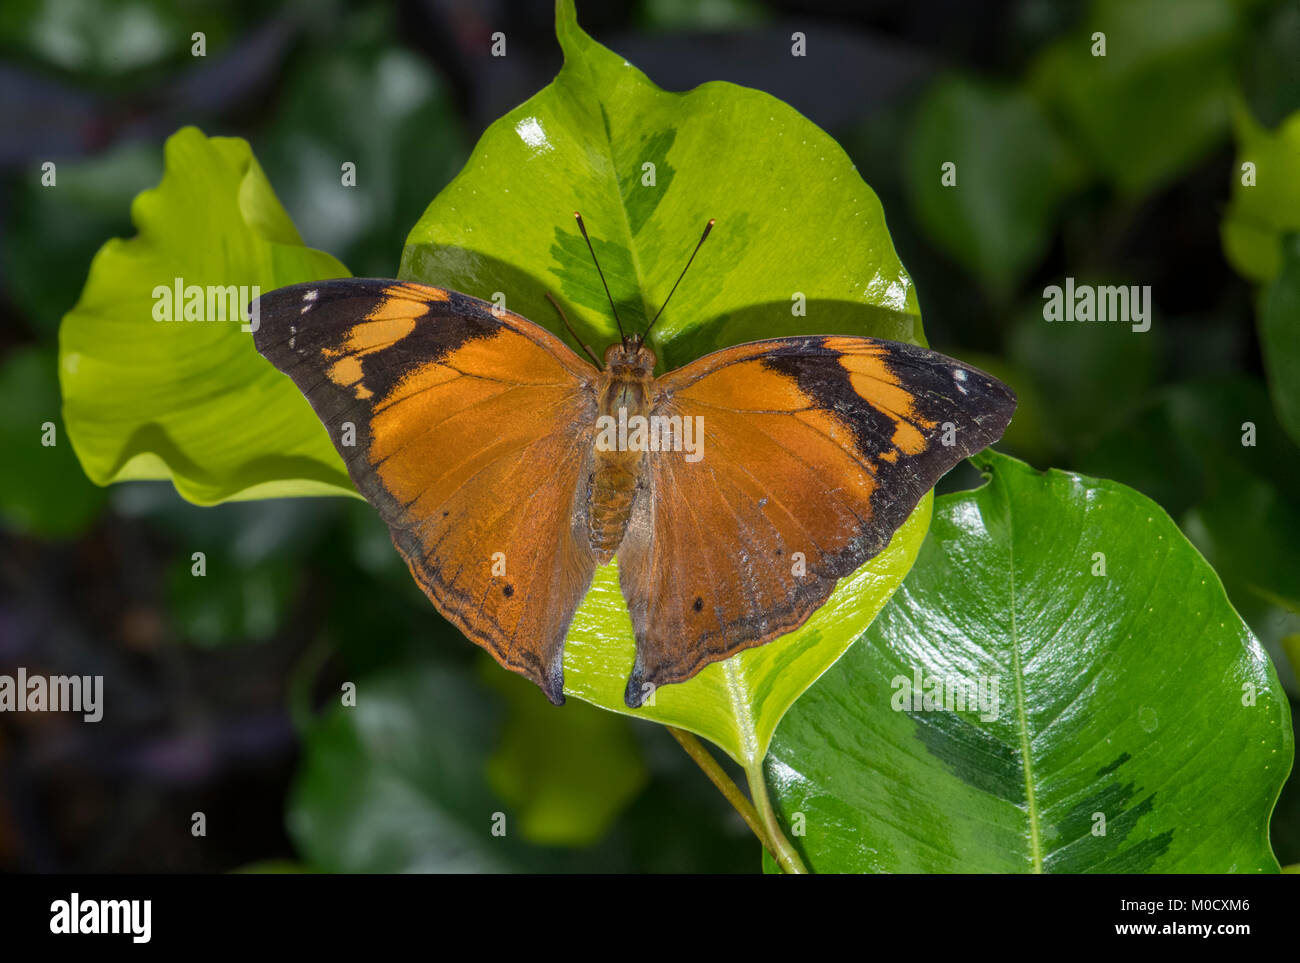 Hoja de Otoño mariposa posado sobre una hoja, cerrar Foto de stock